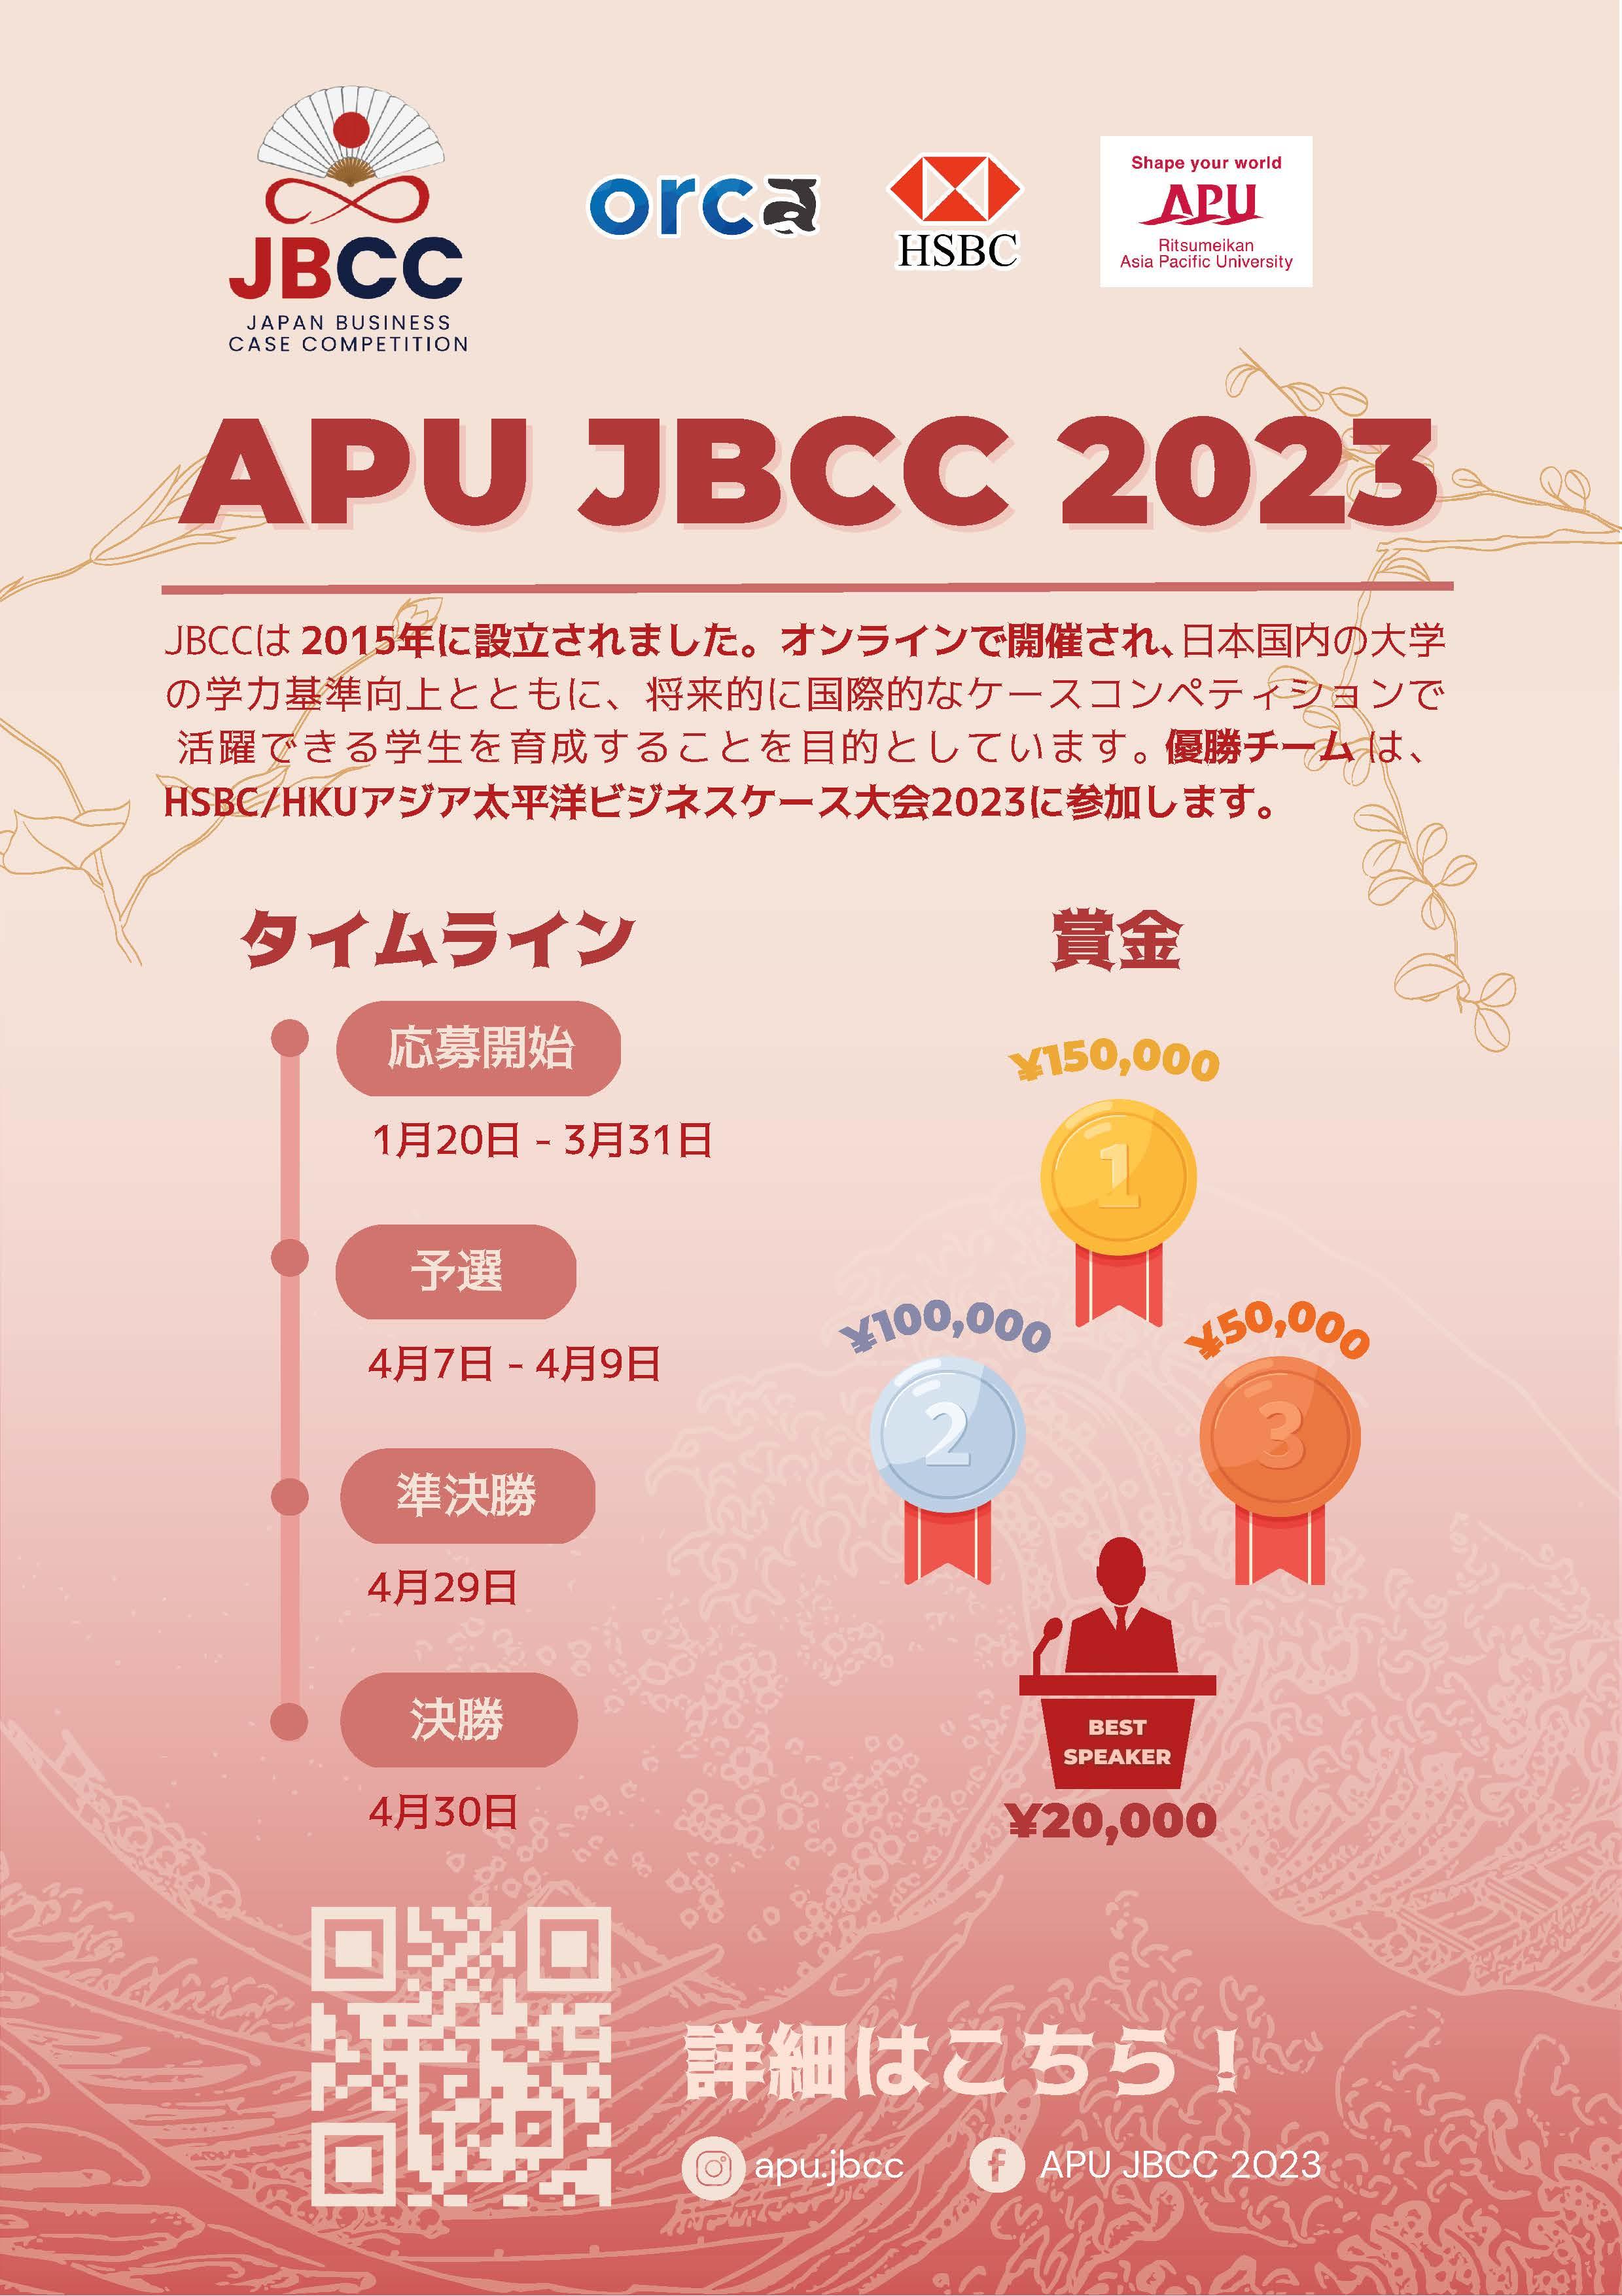 【3/31(金) エントリー〆切: APU JBCC 2023】APU 日本ビジネスケースコンペティション2023